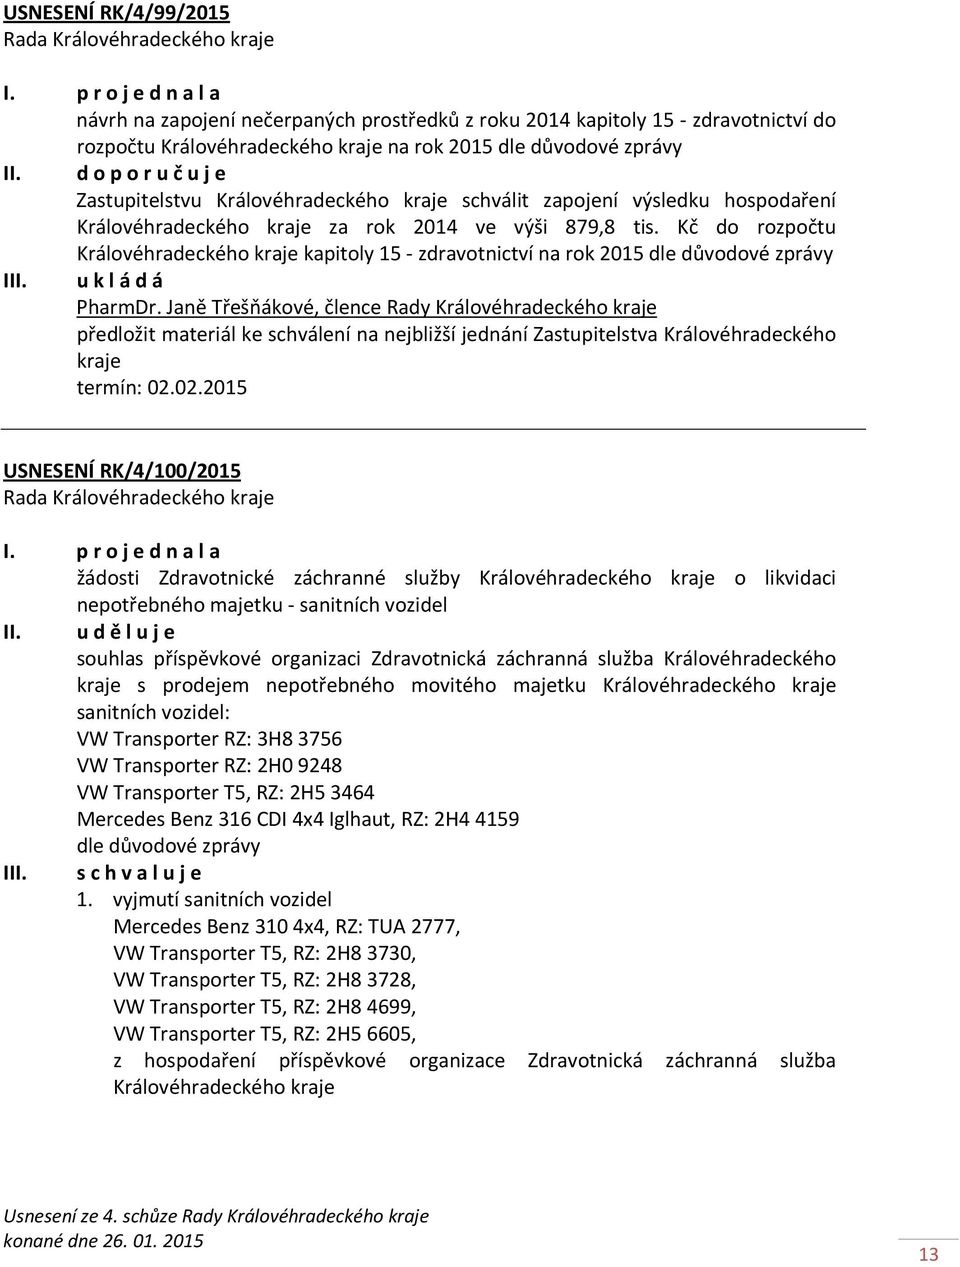 Kč do rozpočtu Královéhradeckého kraje kapitoly 15 - zdravotnictví na rok 2015 dle důvodové zprávy I PharmDr.